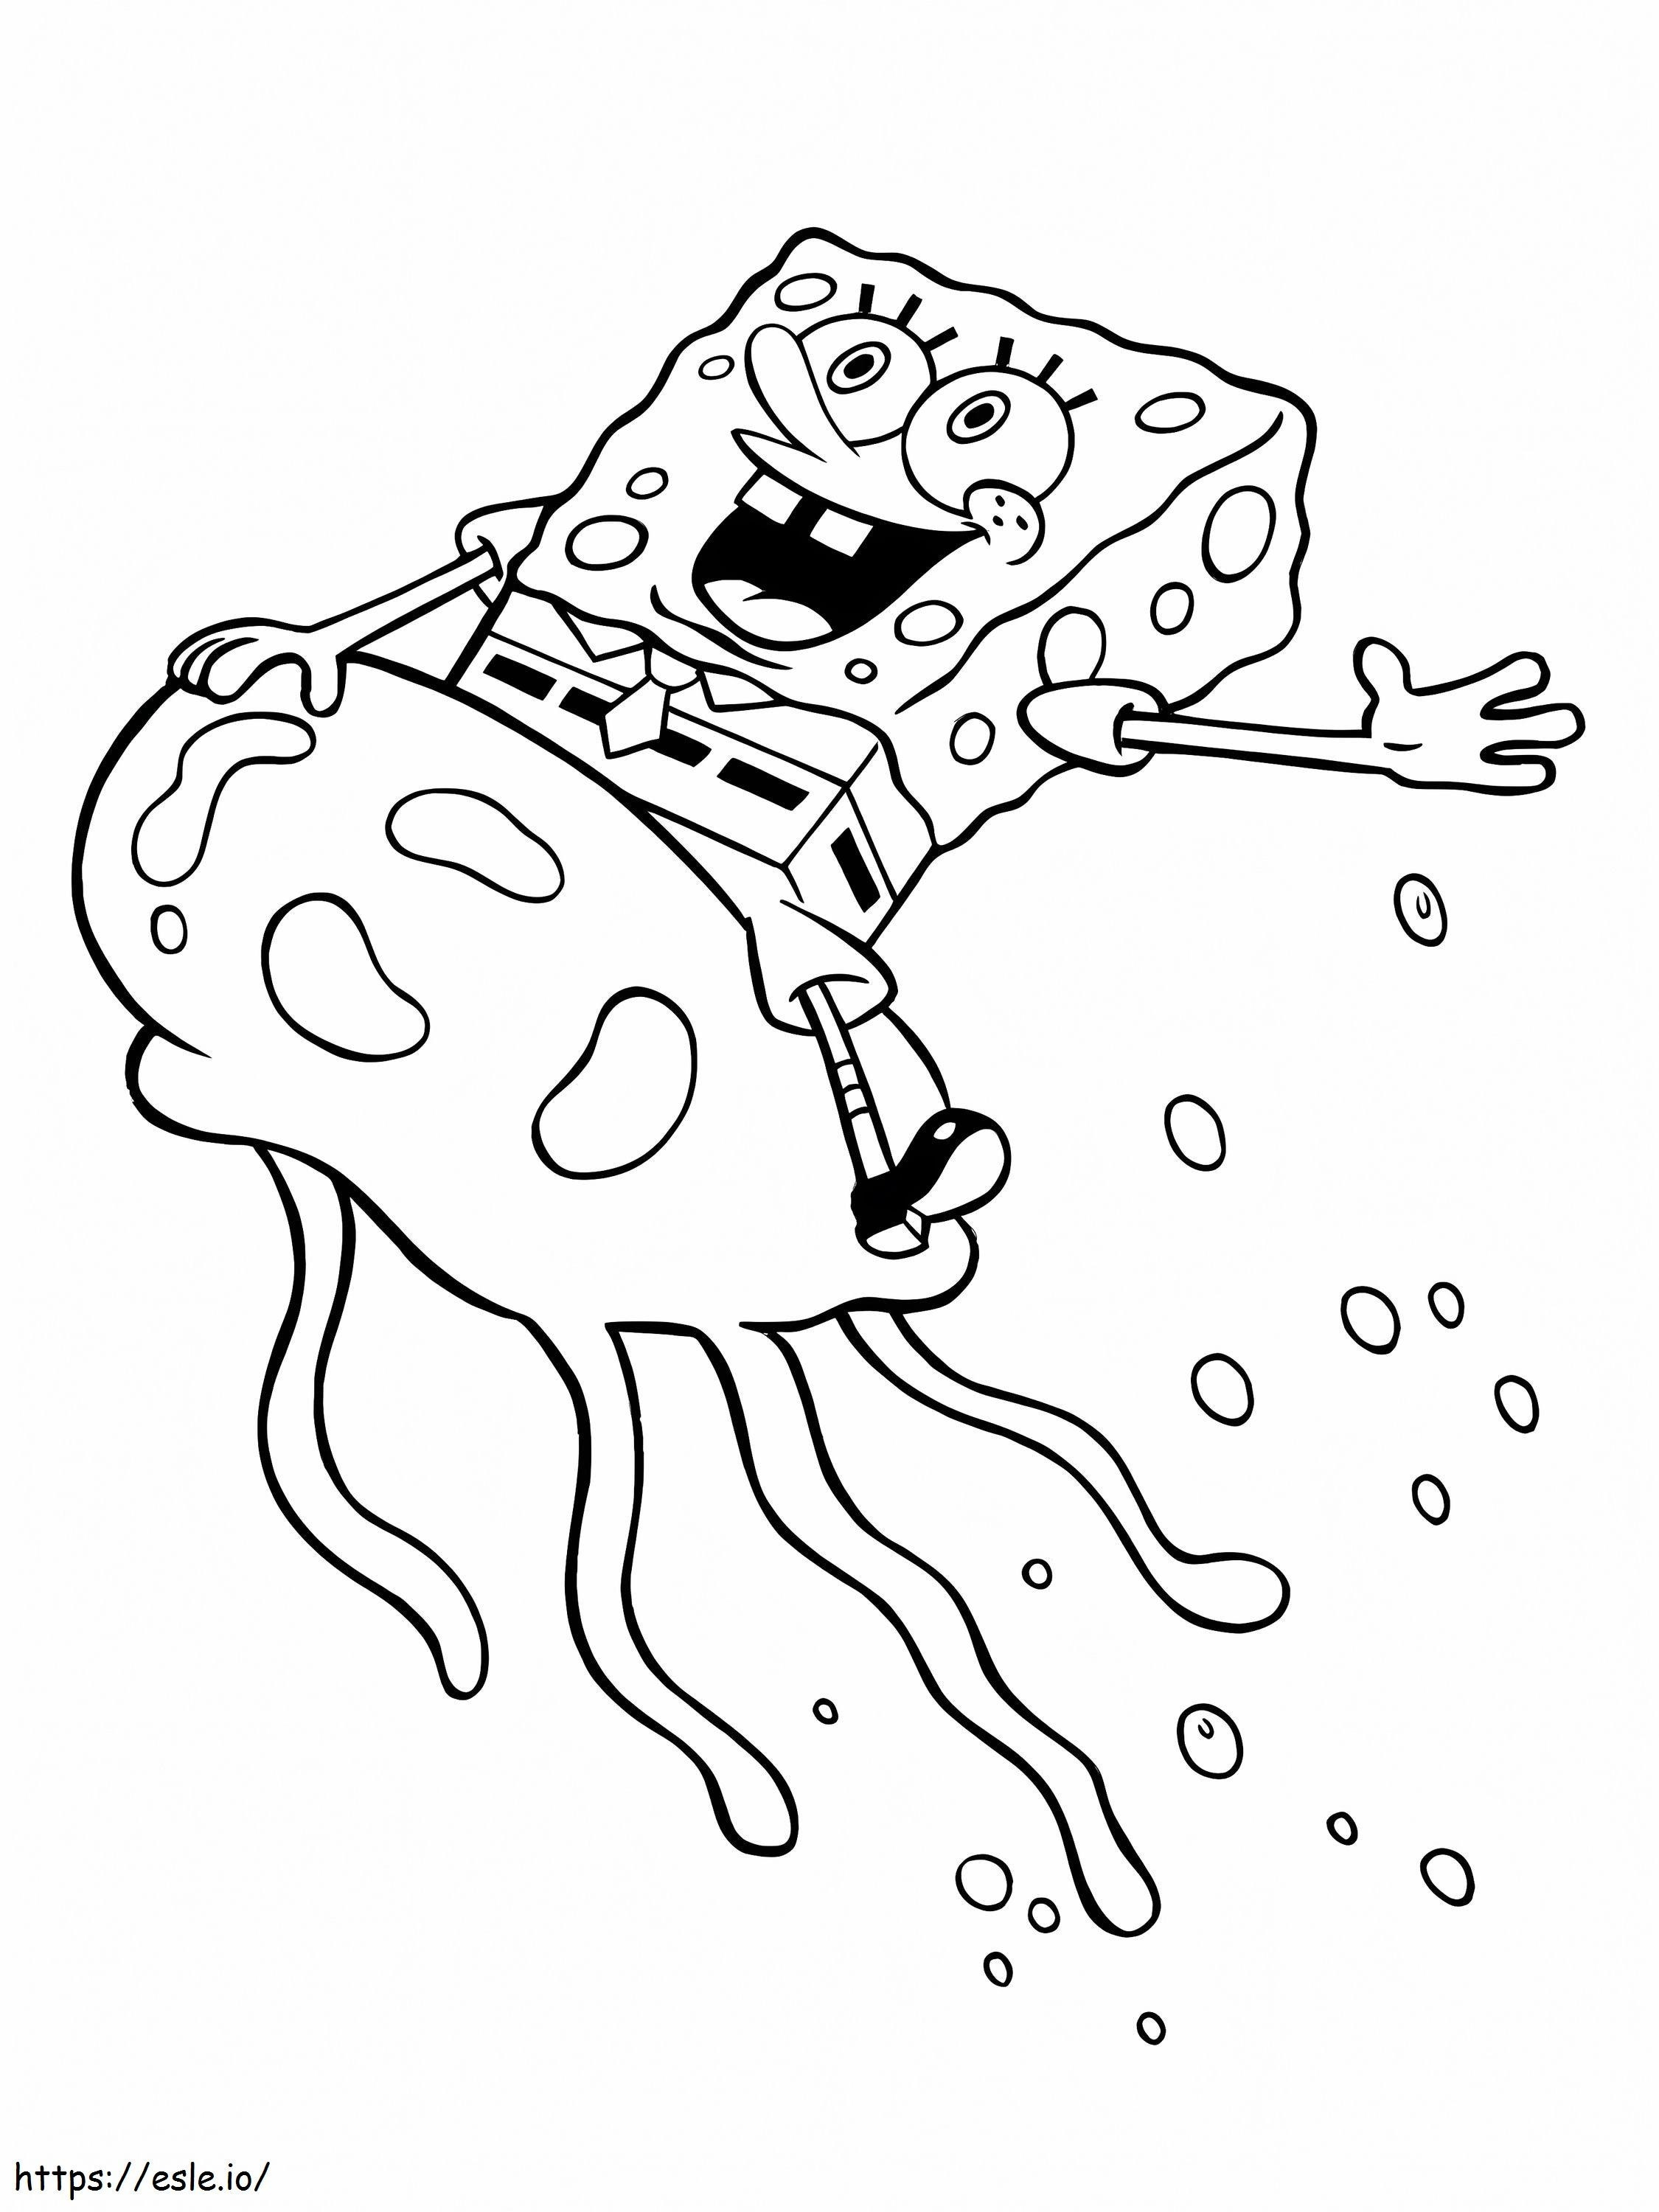 Spongebob in der Qualle ausmalbilder